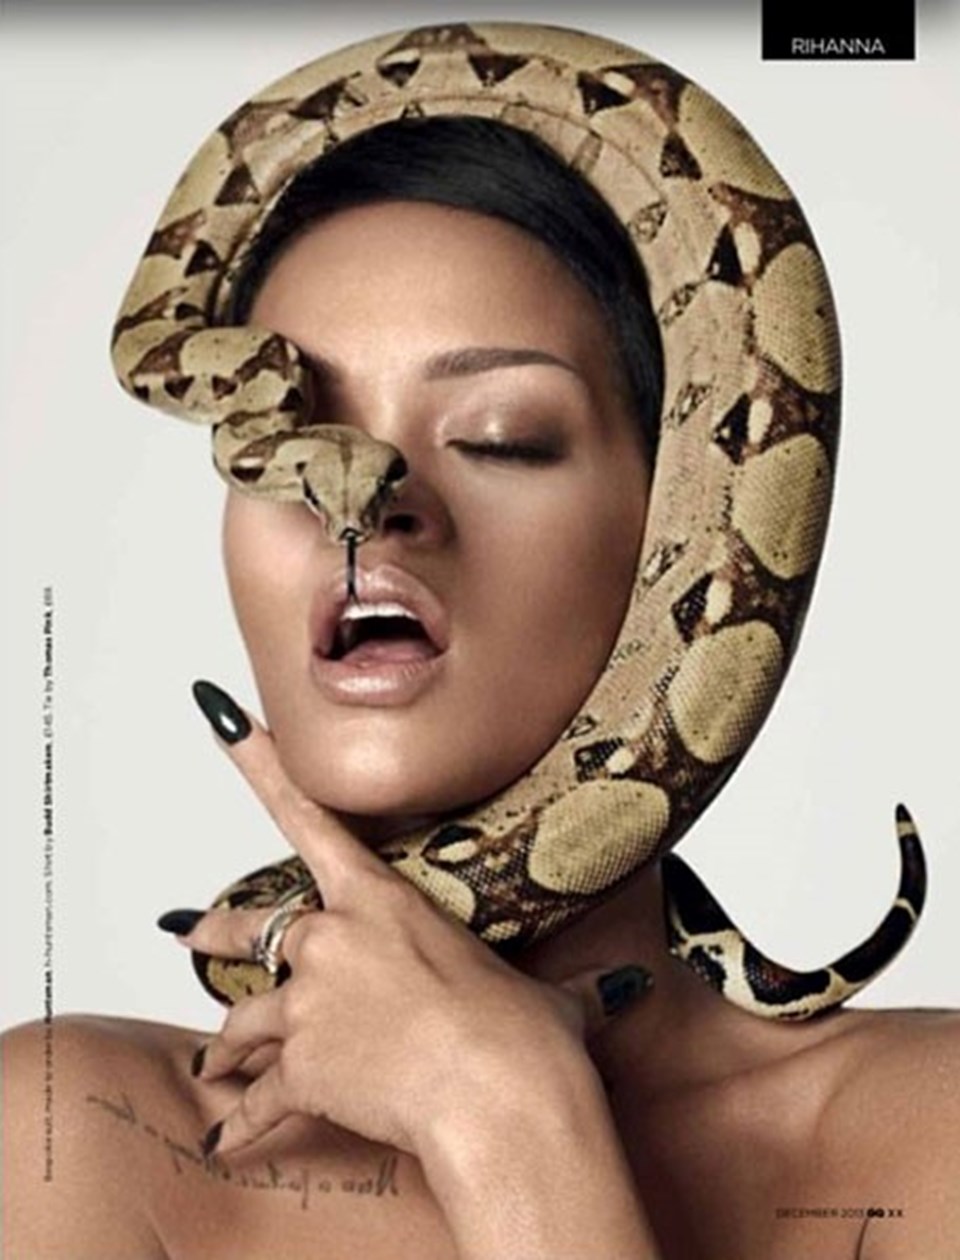 GQ için kamera karşısına geçen Rihanna, bir yılanla poz vermiş, genç şarkıcının bu pozu uzun süre konuşulmuştu.
